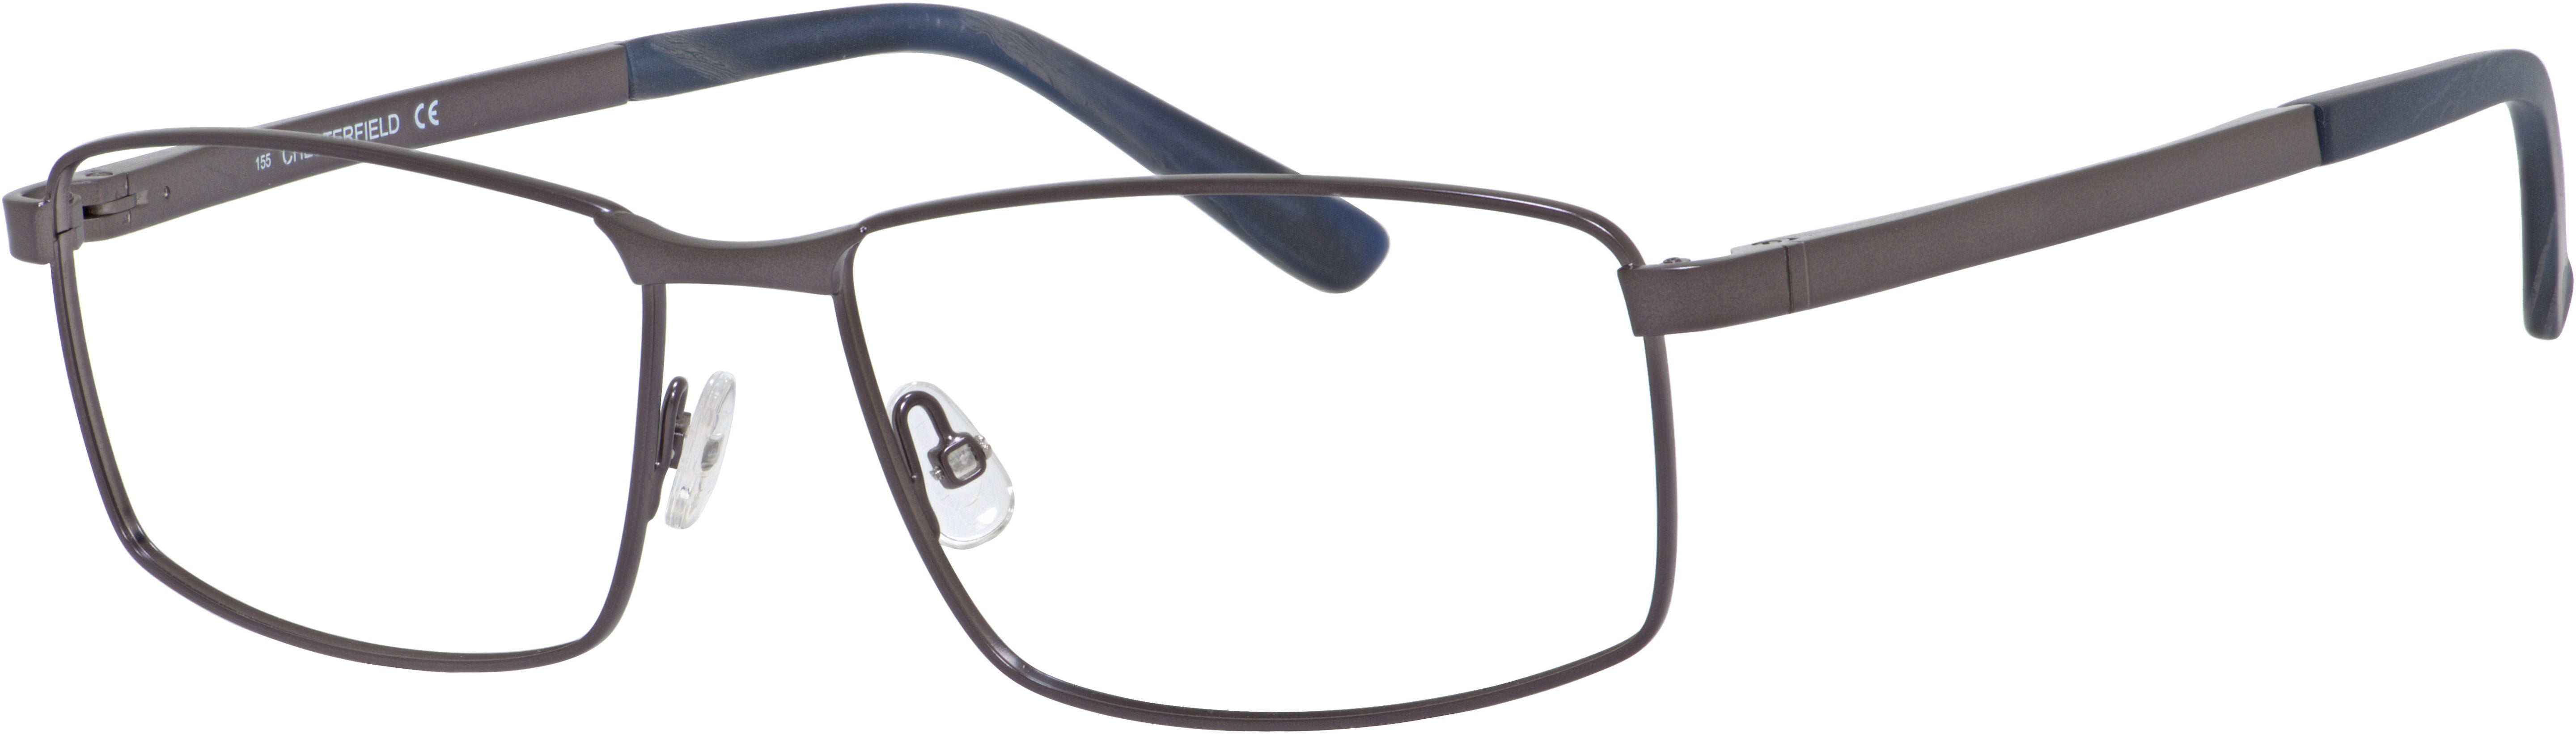  Chesterfield 56XL Rectangular Eyeglasses 0FRE-0FRE  Matte Gray (00 Demo Lens)